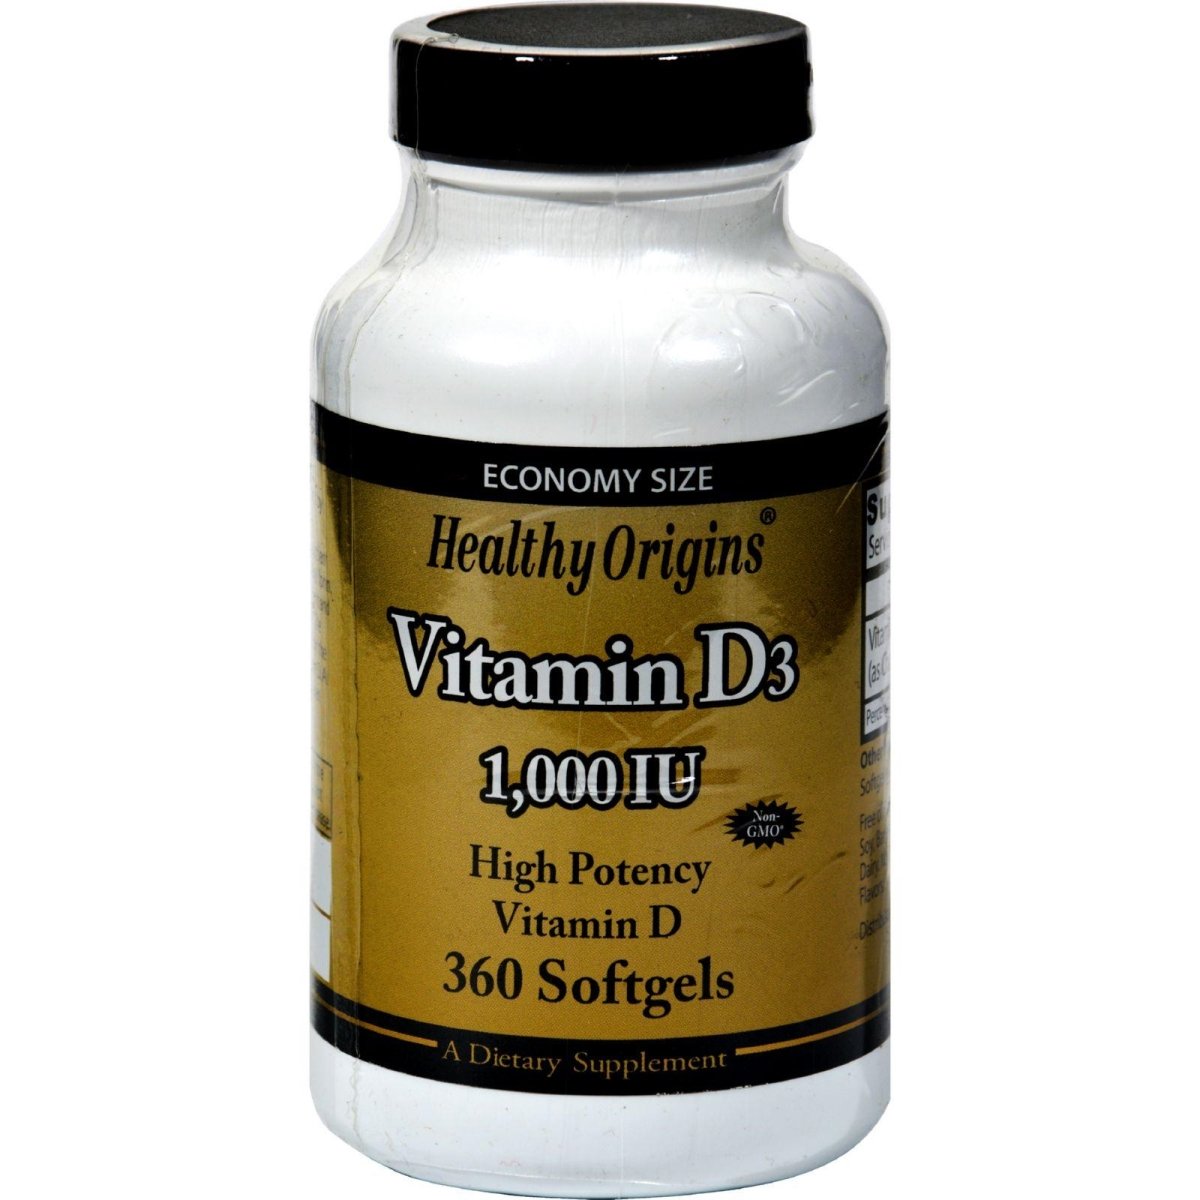 Hg1208206 Vitamin D3 - 1000 Iu, 360 Softgels